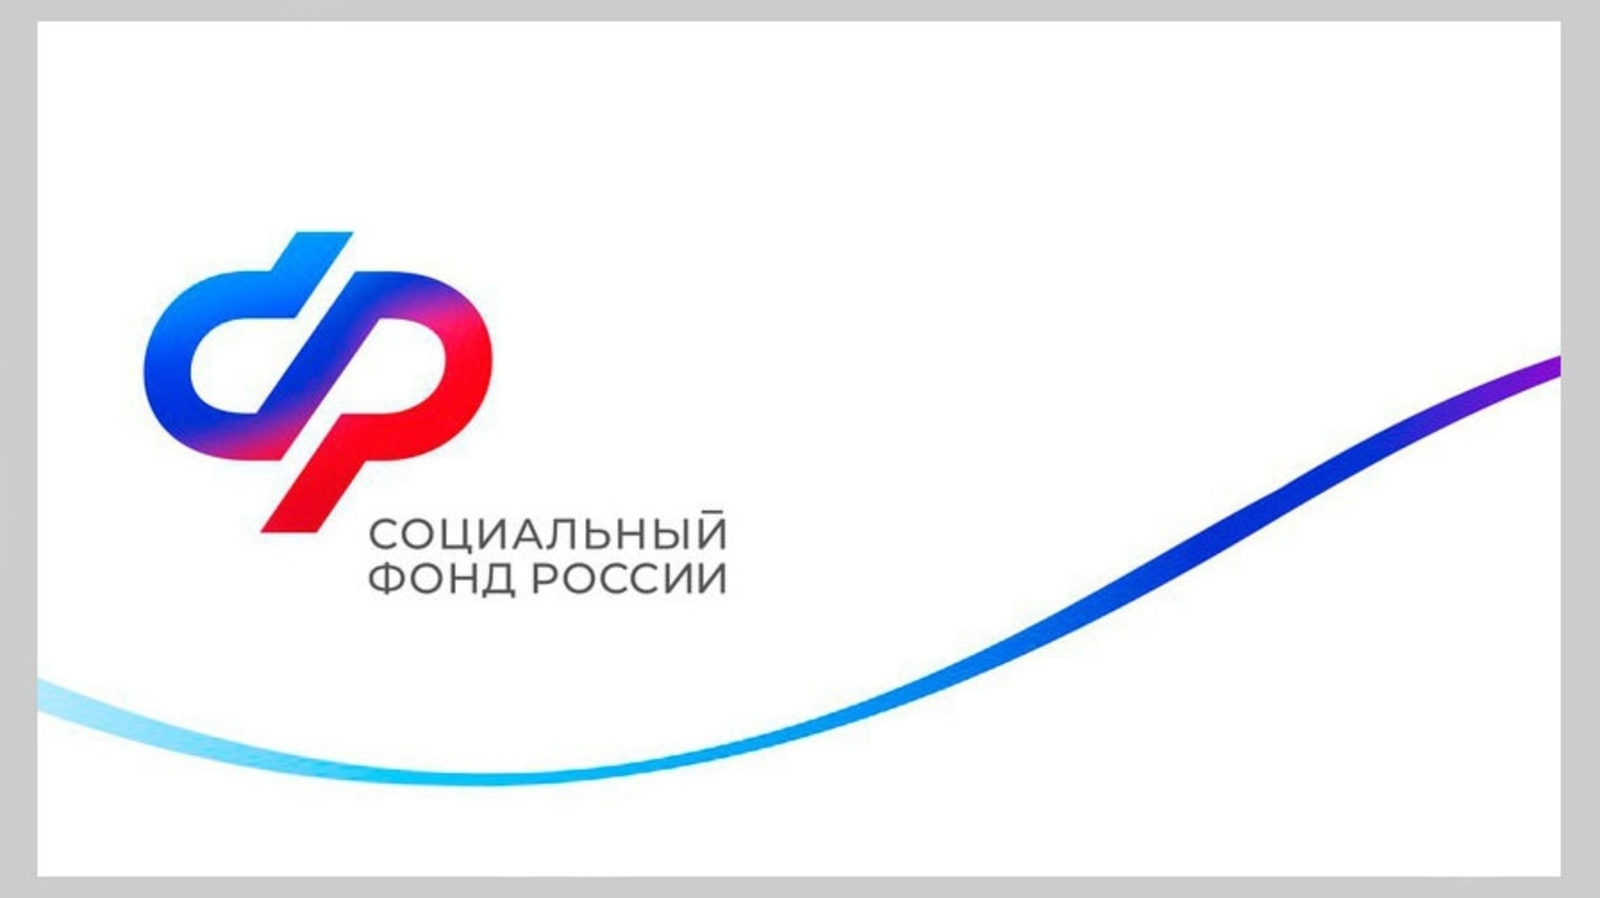 Более 24 тысяч медицинских работников в Республике Башкортостан получают специальную социальную выплату